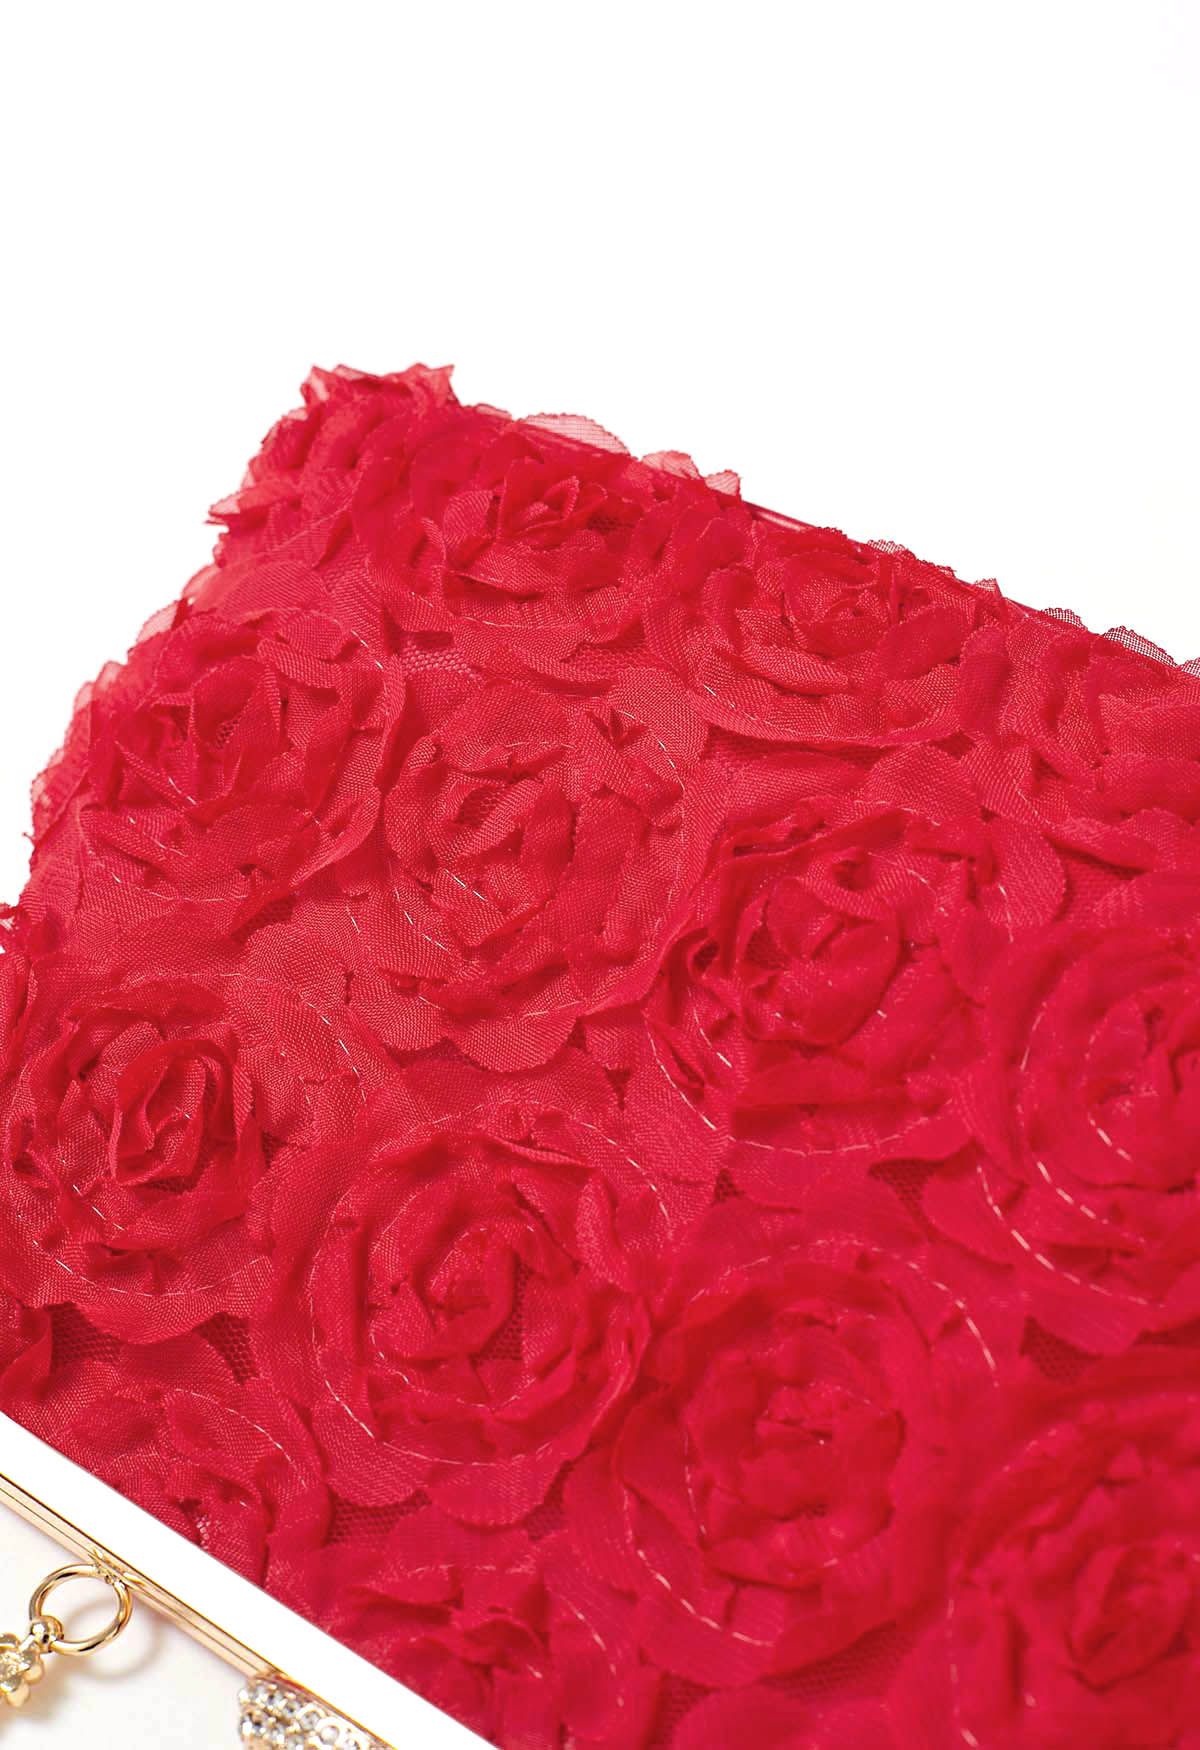 Elegante Rosenblüten-Clutch in Rot